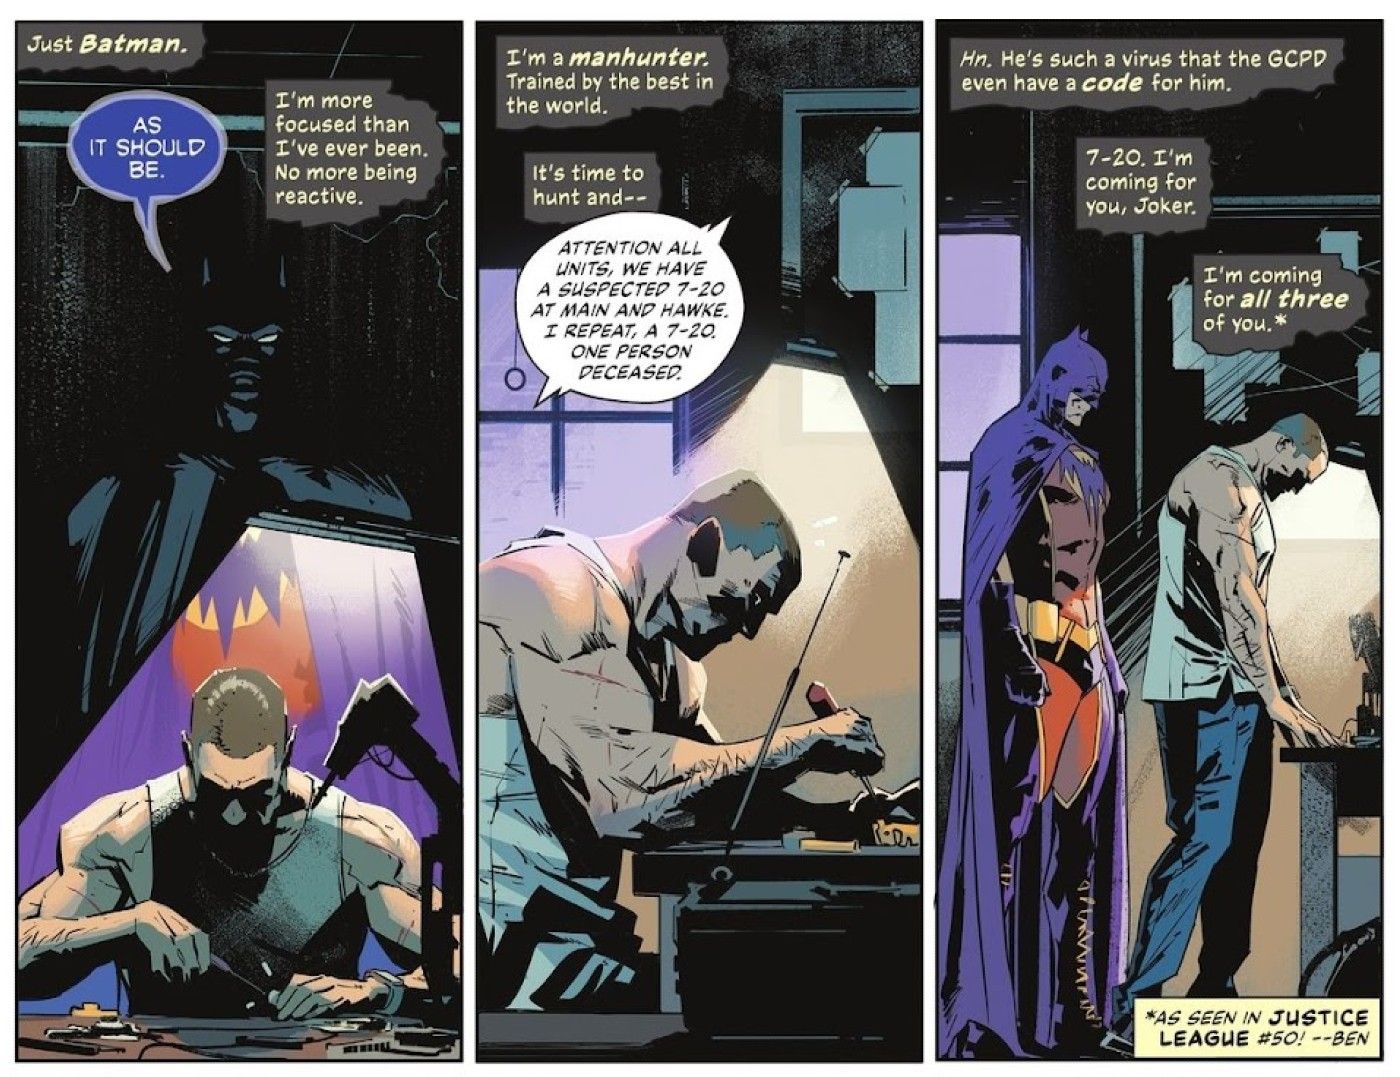 Joker’s New Codename Proves How Badly Batman Has Failed Gotham